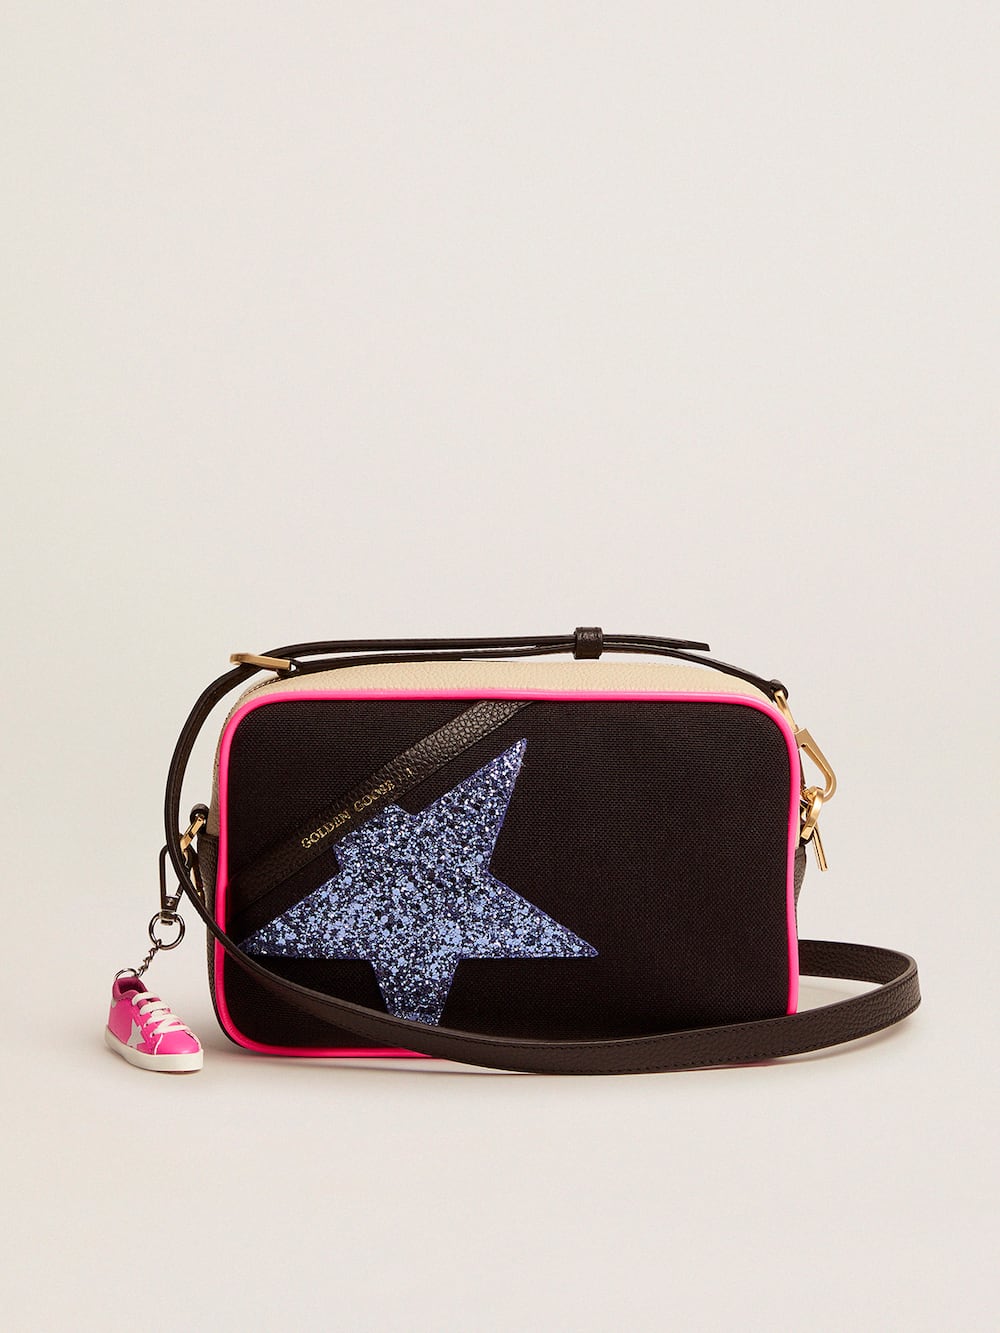 Golden Goose - Bolso Star Bag de lona con aplicaciones blanco sucio de piel martillada y estrella de purpurina morada in 